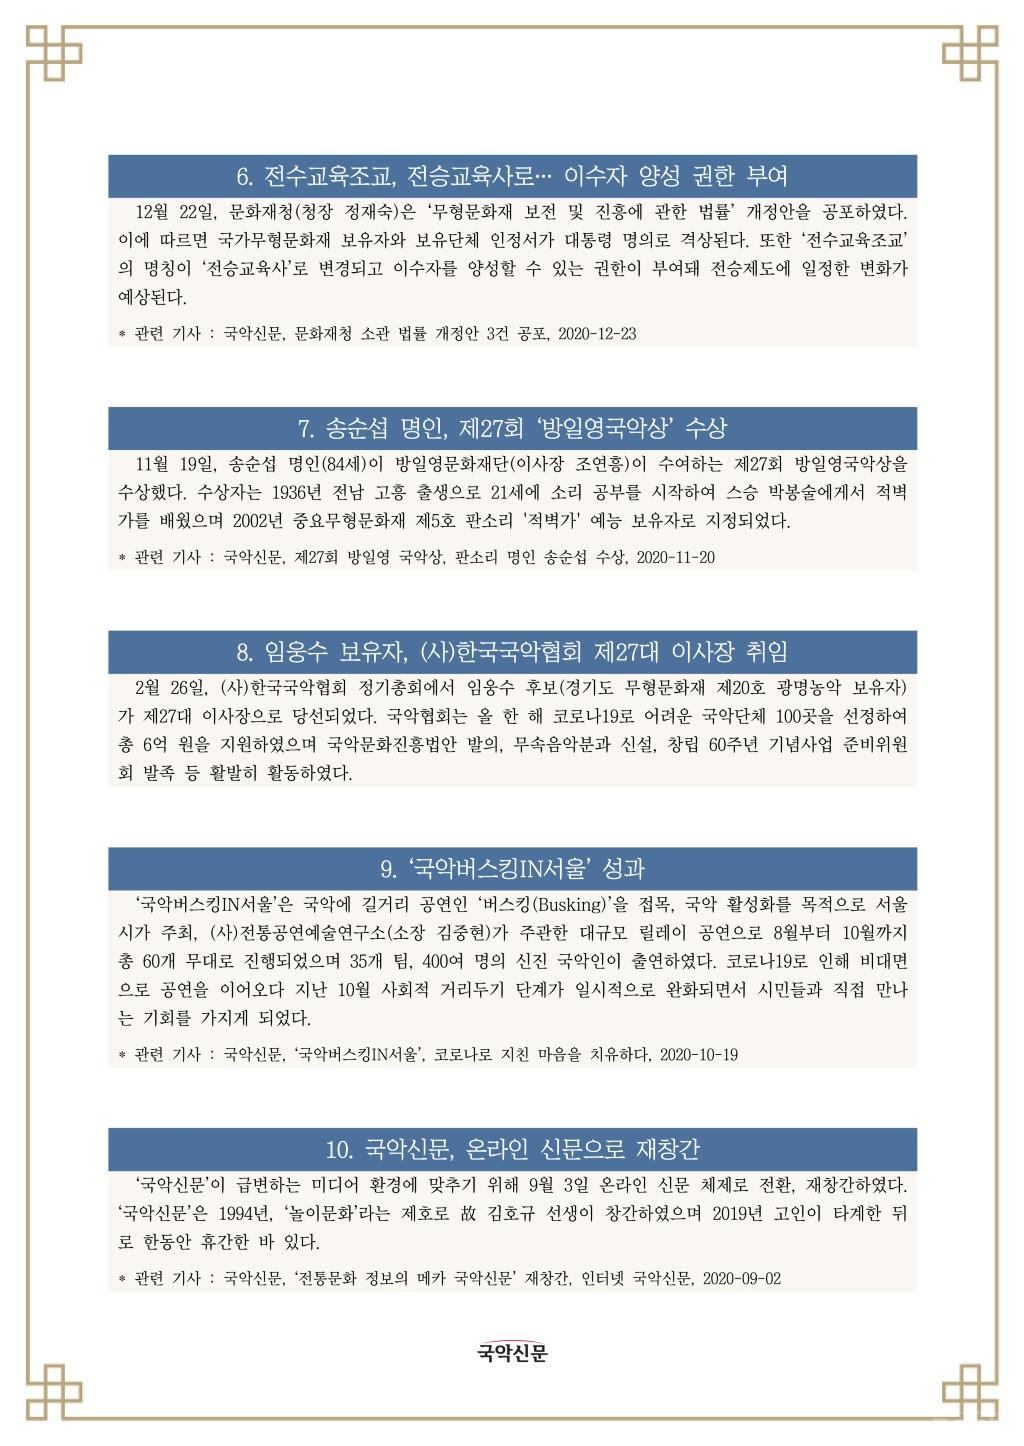 국악신문 선정, 2020년 국악계 10대 뉴스-2.jpg